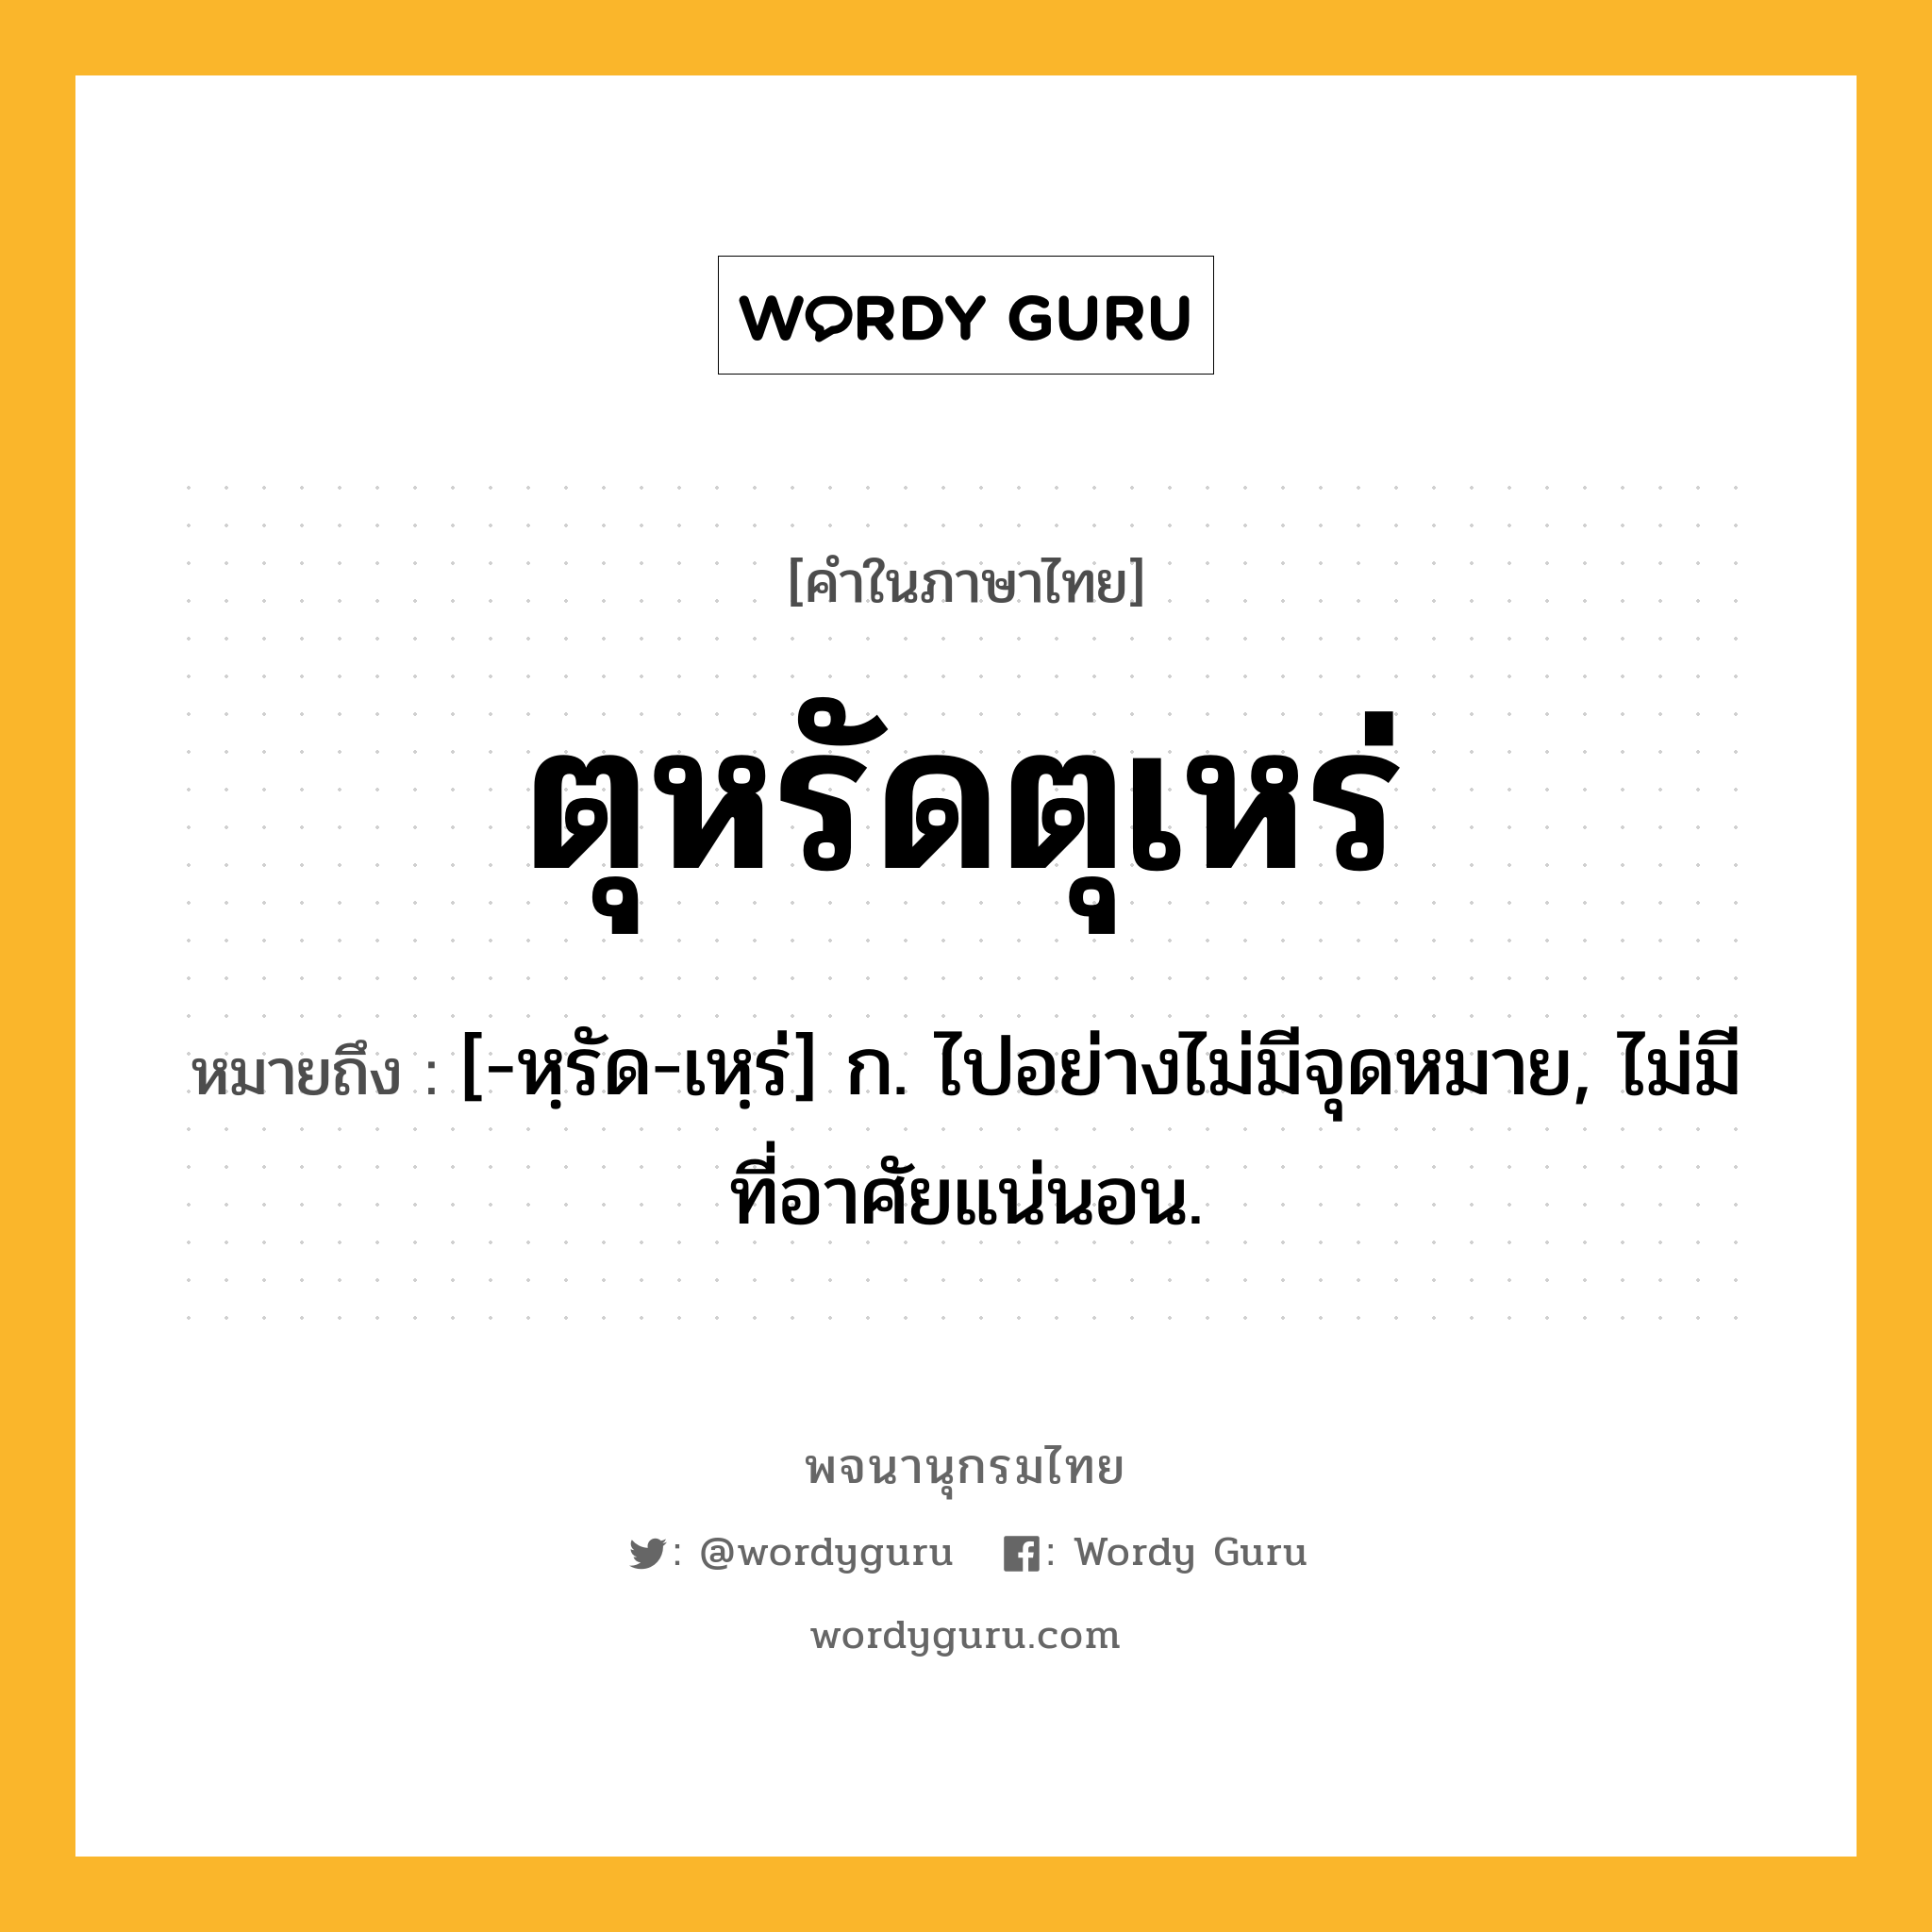 ตุหรัดตุเหร่ หมายถึงอะไร?, คำในภาษาไทย ตุหรัดตุเหร่ หมายถึง [-หฺรัด-เหฺร่] ก. ไปอย่างไม่มีจุดหมาย, ไม่มีที่อาศัยแน่นอน.